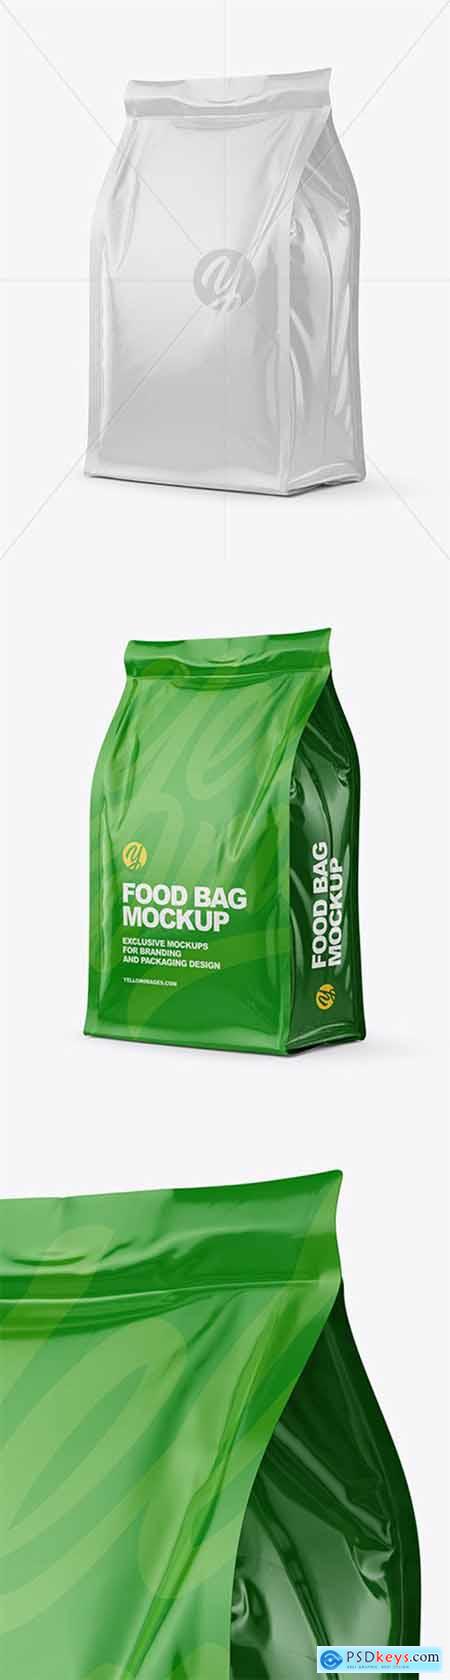 Glossy Food Bag Mockup 60537